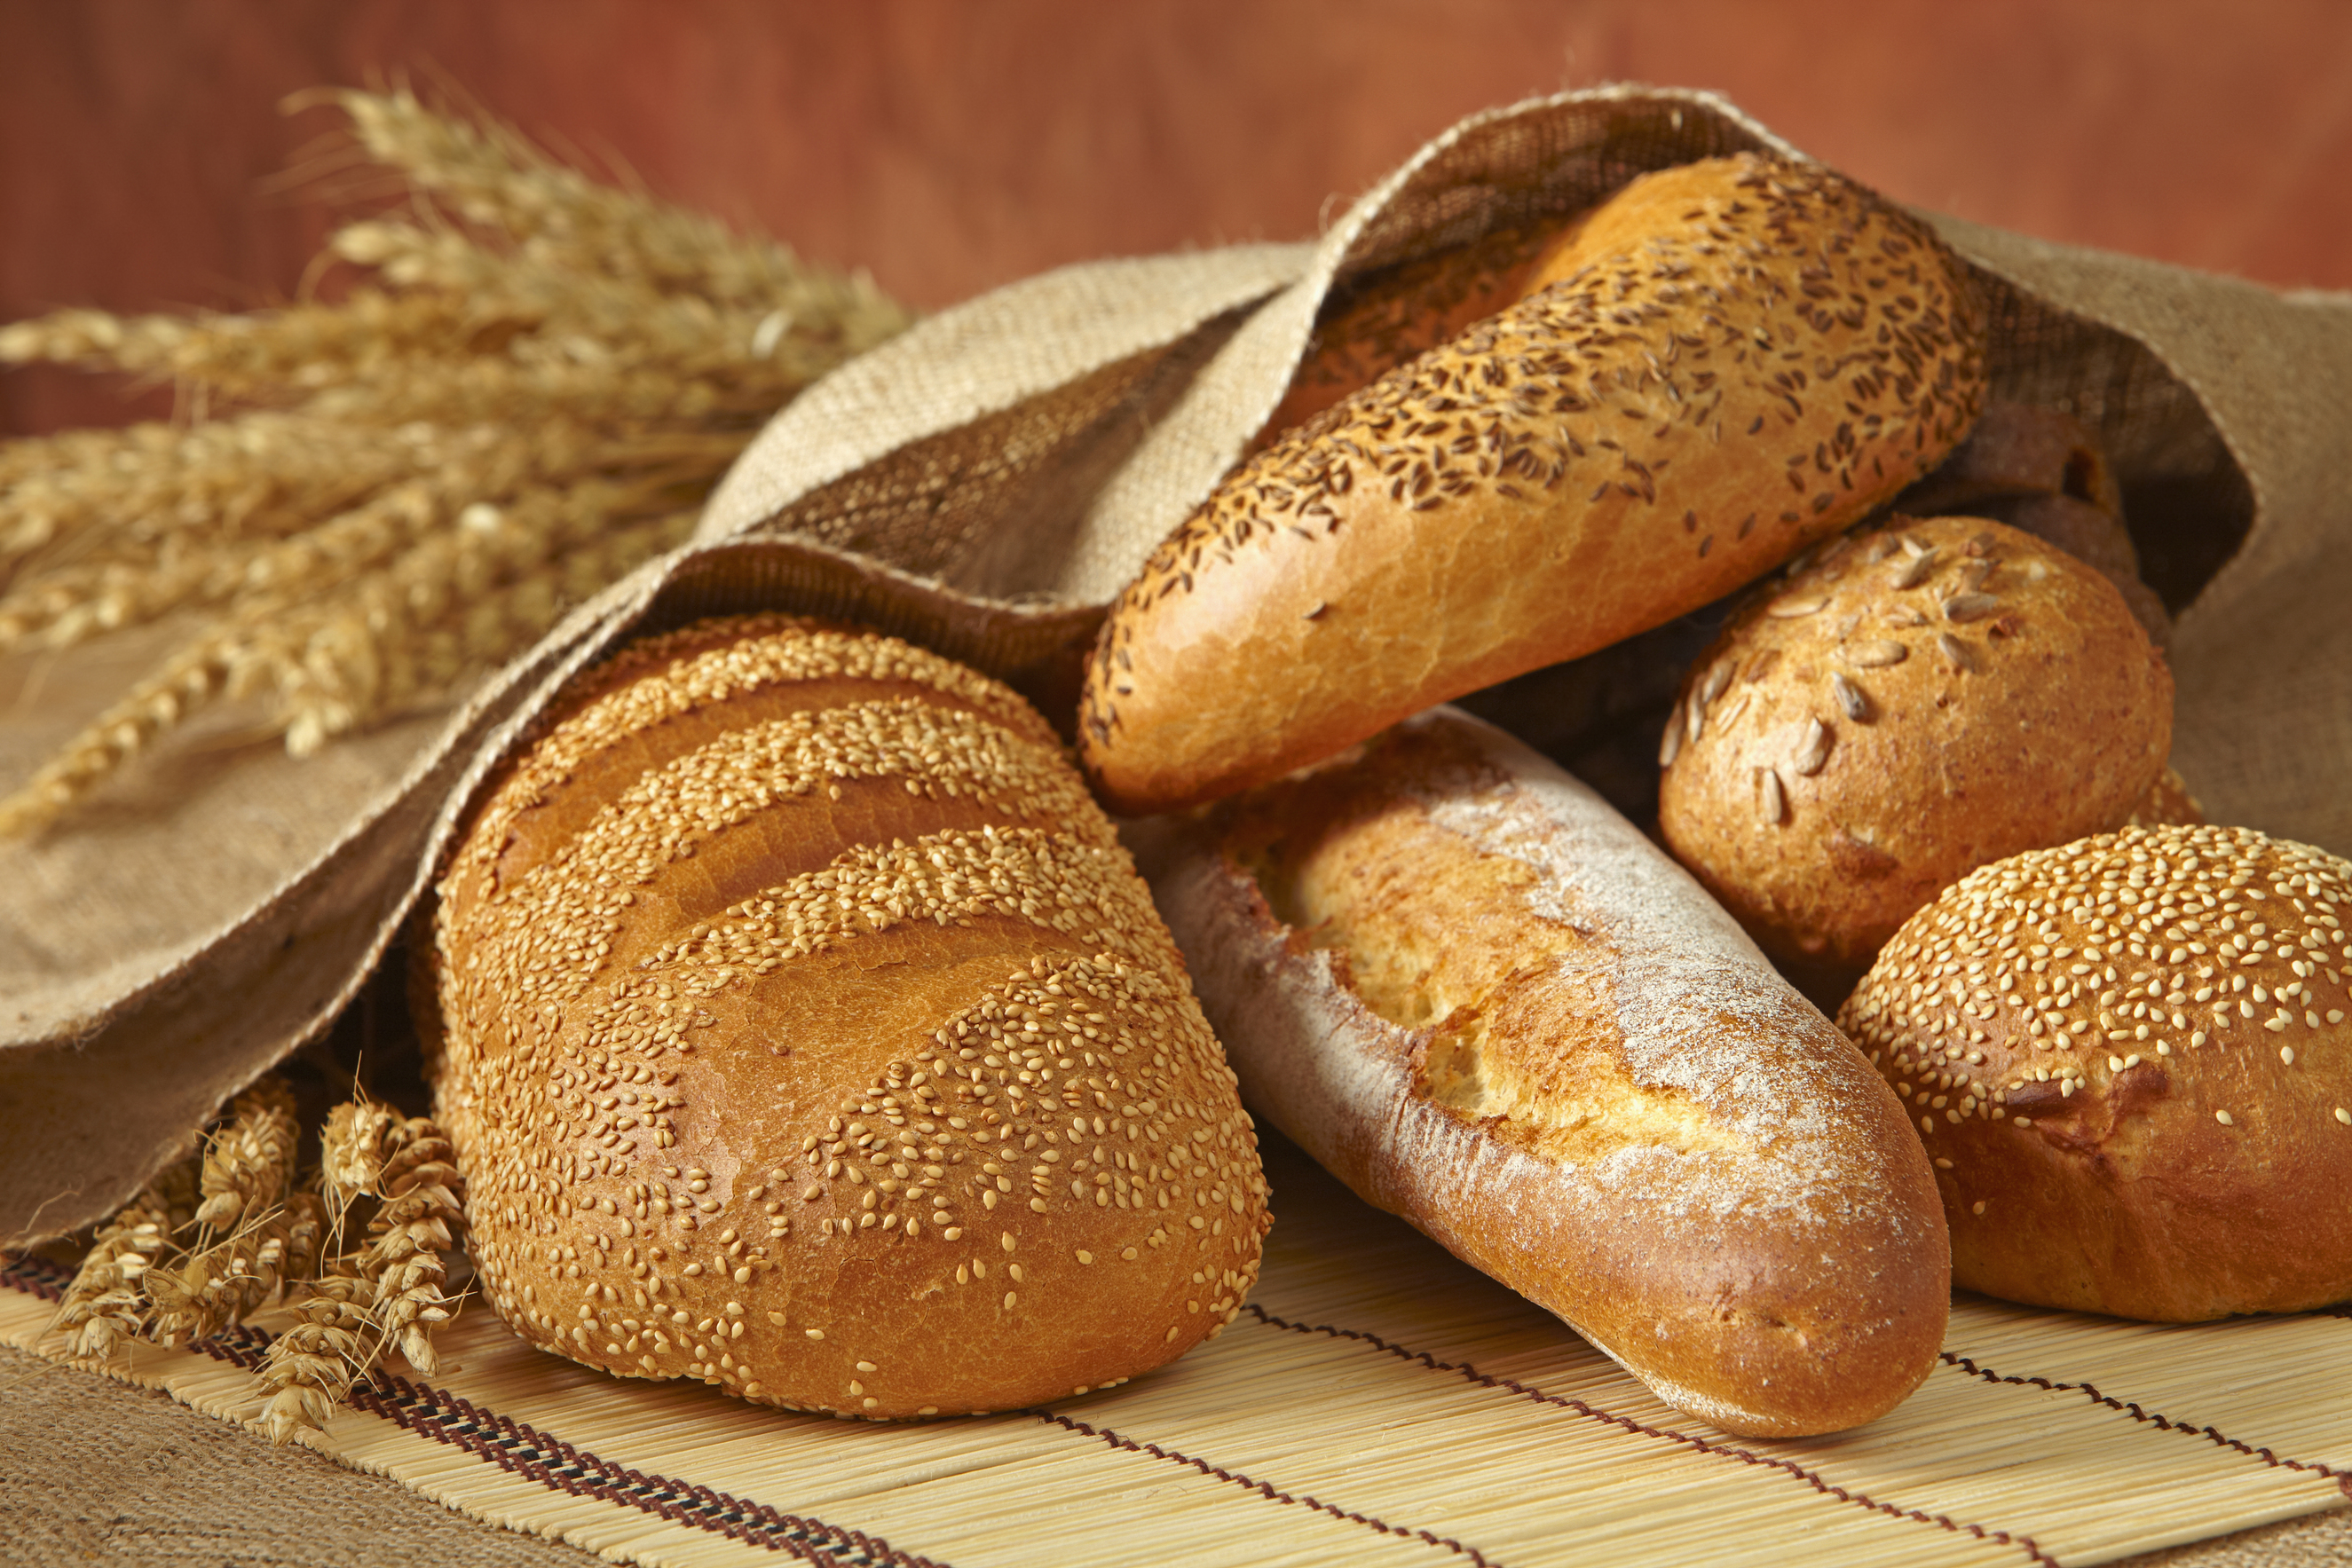  Mai stato cosi basso il consumo di pane degli italiani: nel 2014 al minimo storico